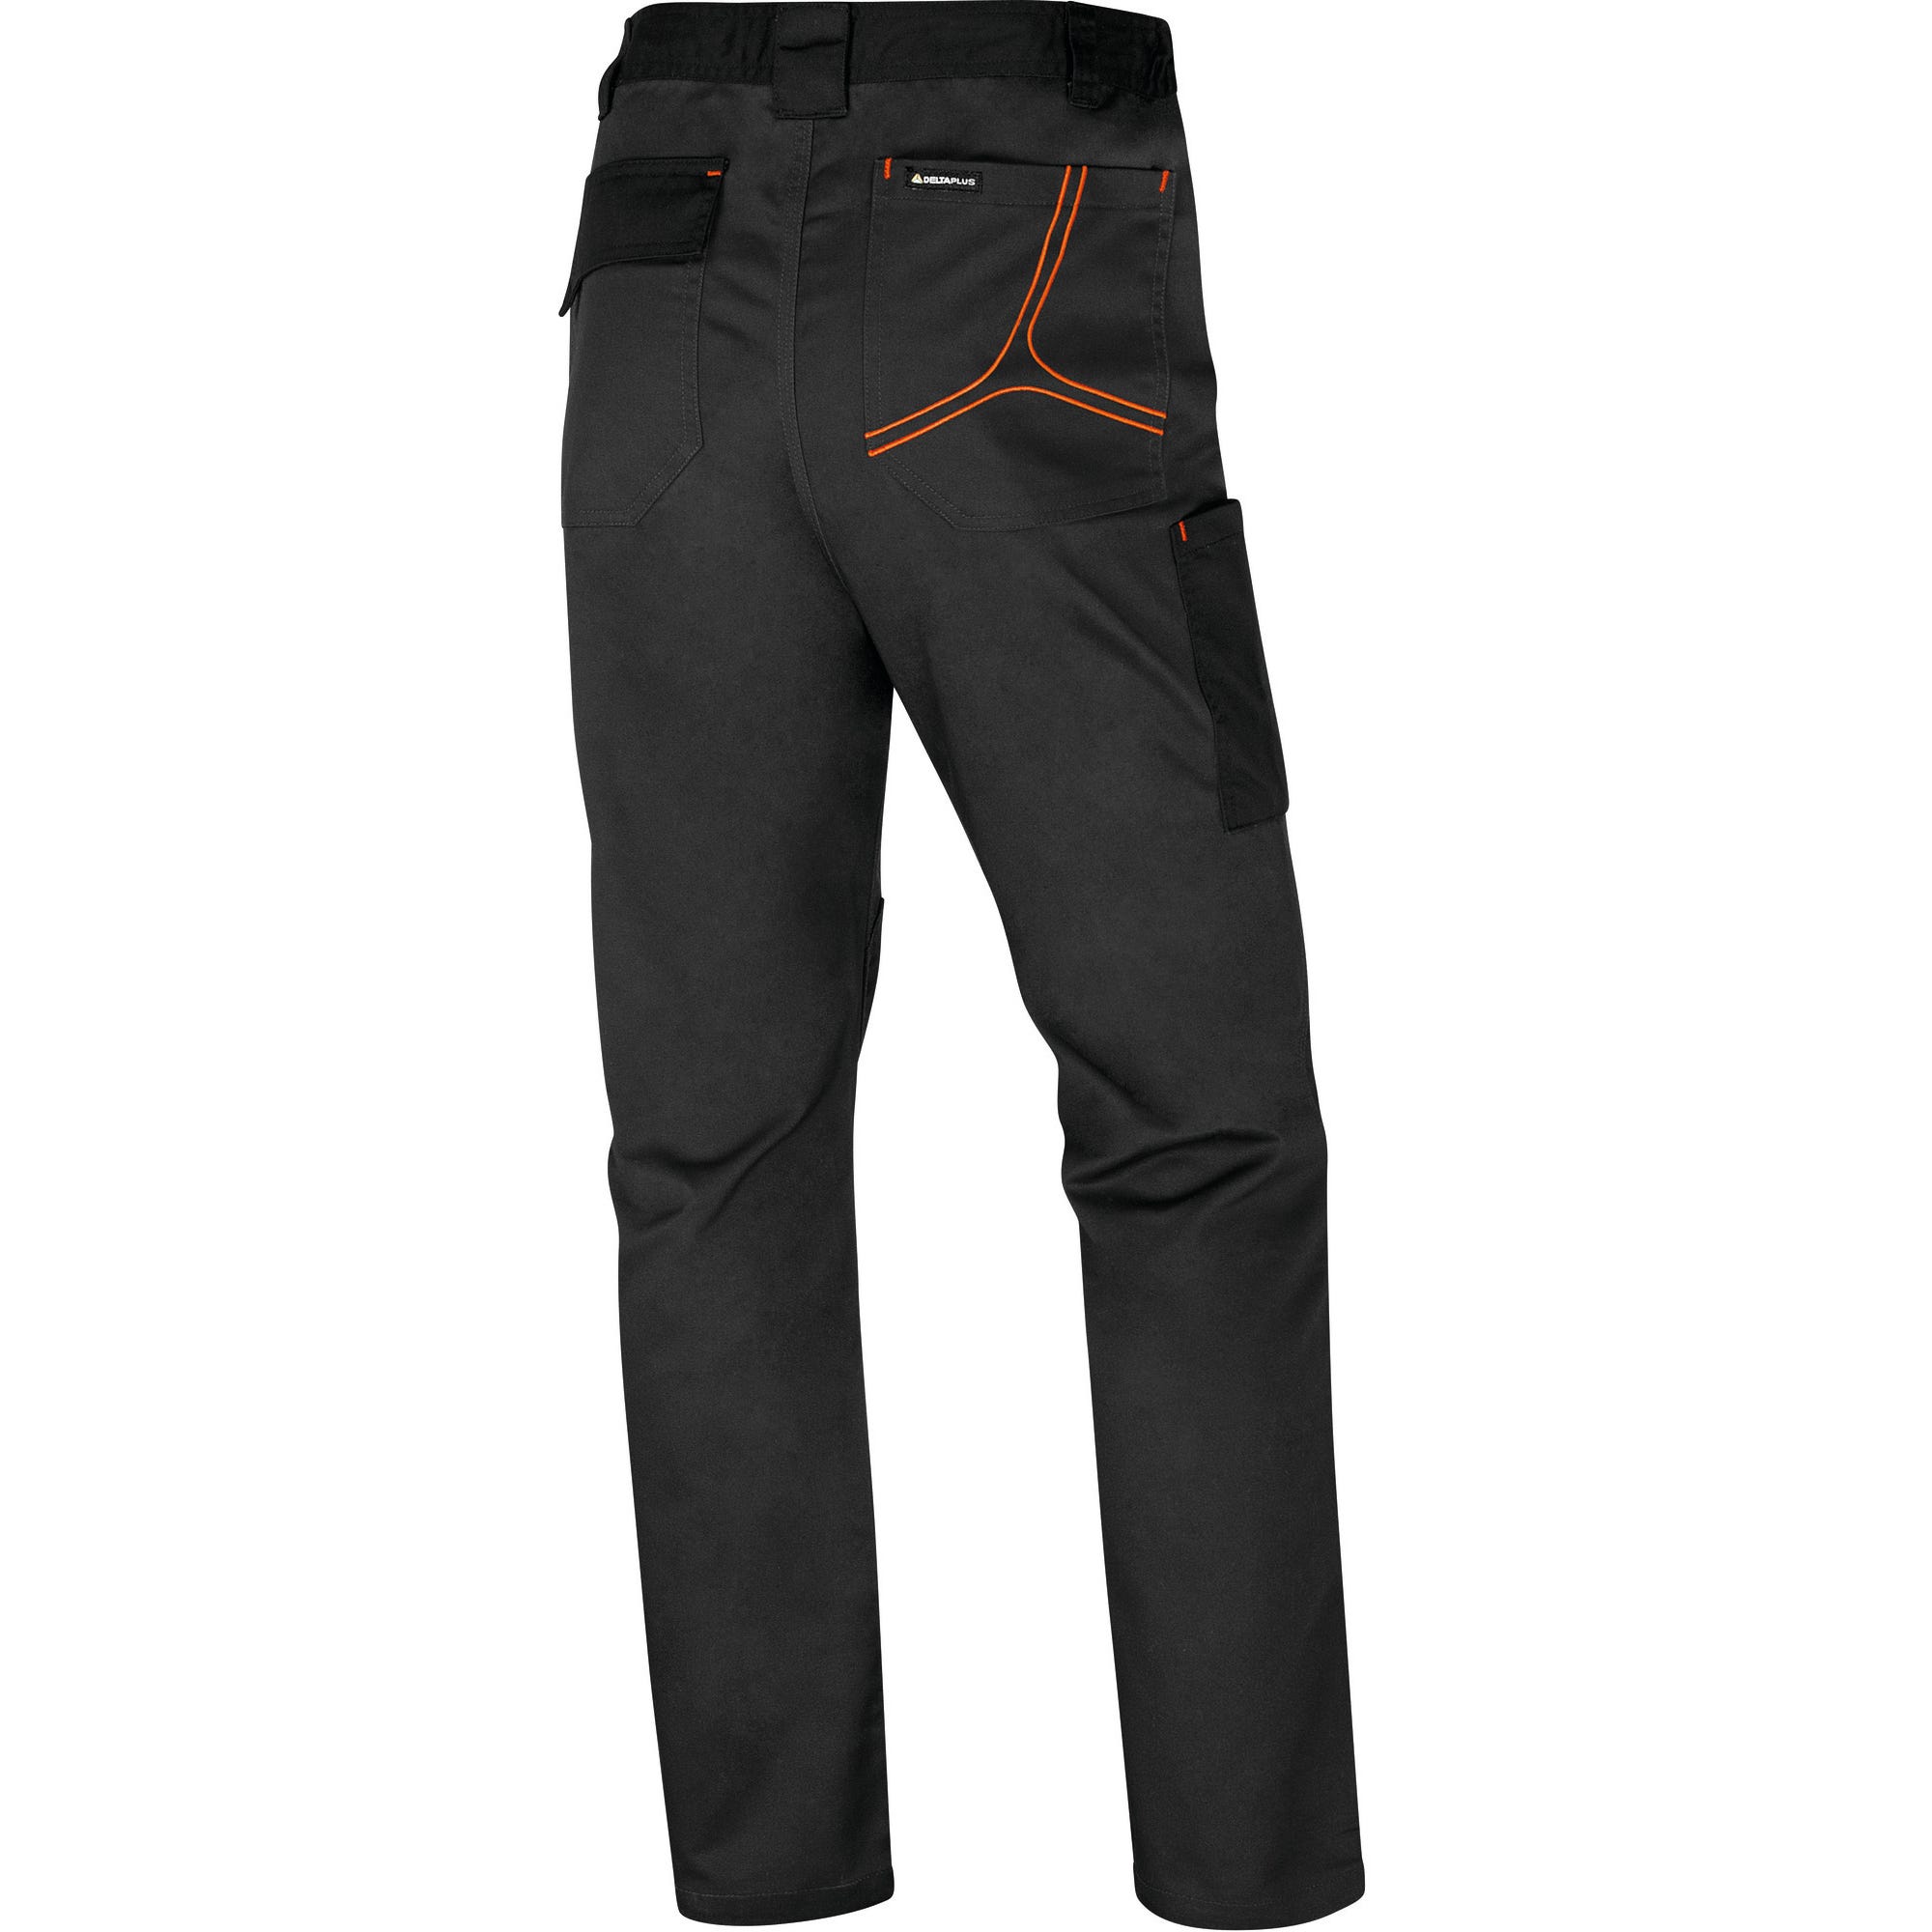 Pantalon de travail Gris/Orange T.S MACH2 - DELTA PLUS 1